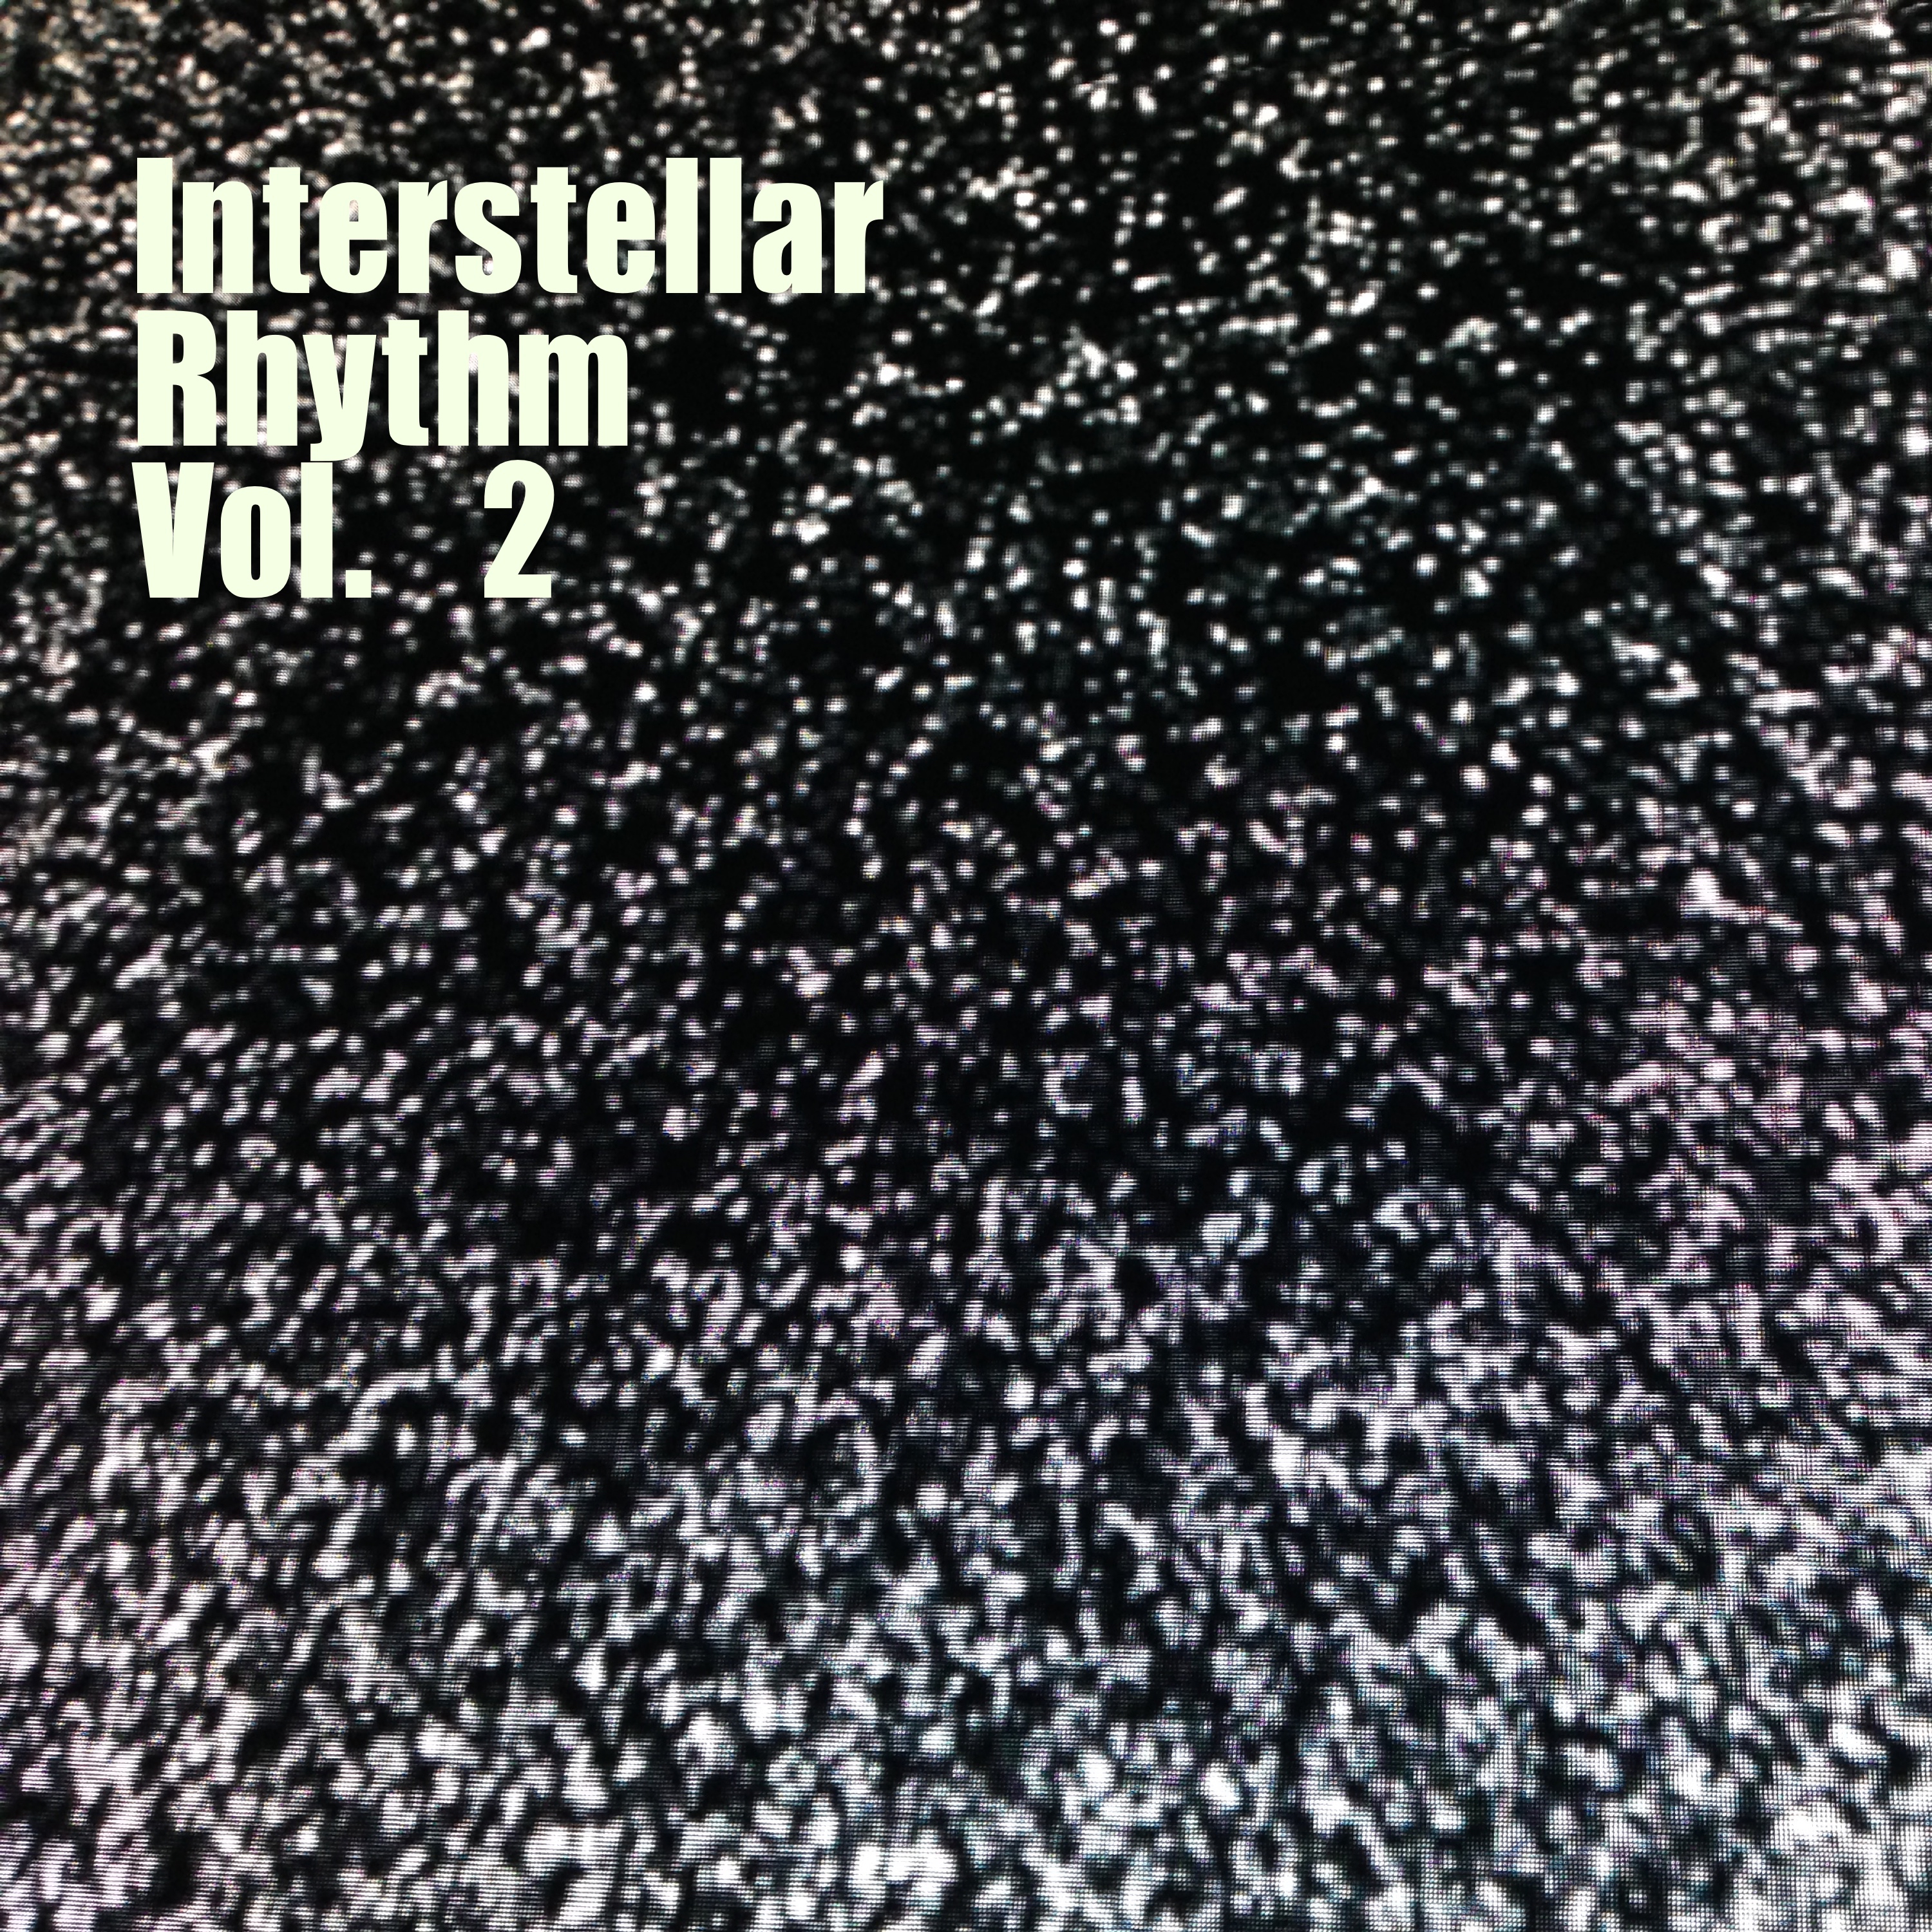 Interstellar Rhythm, Vol. 2